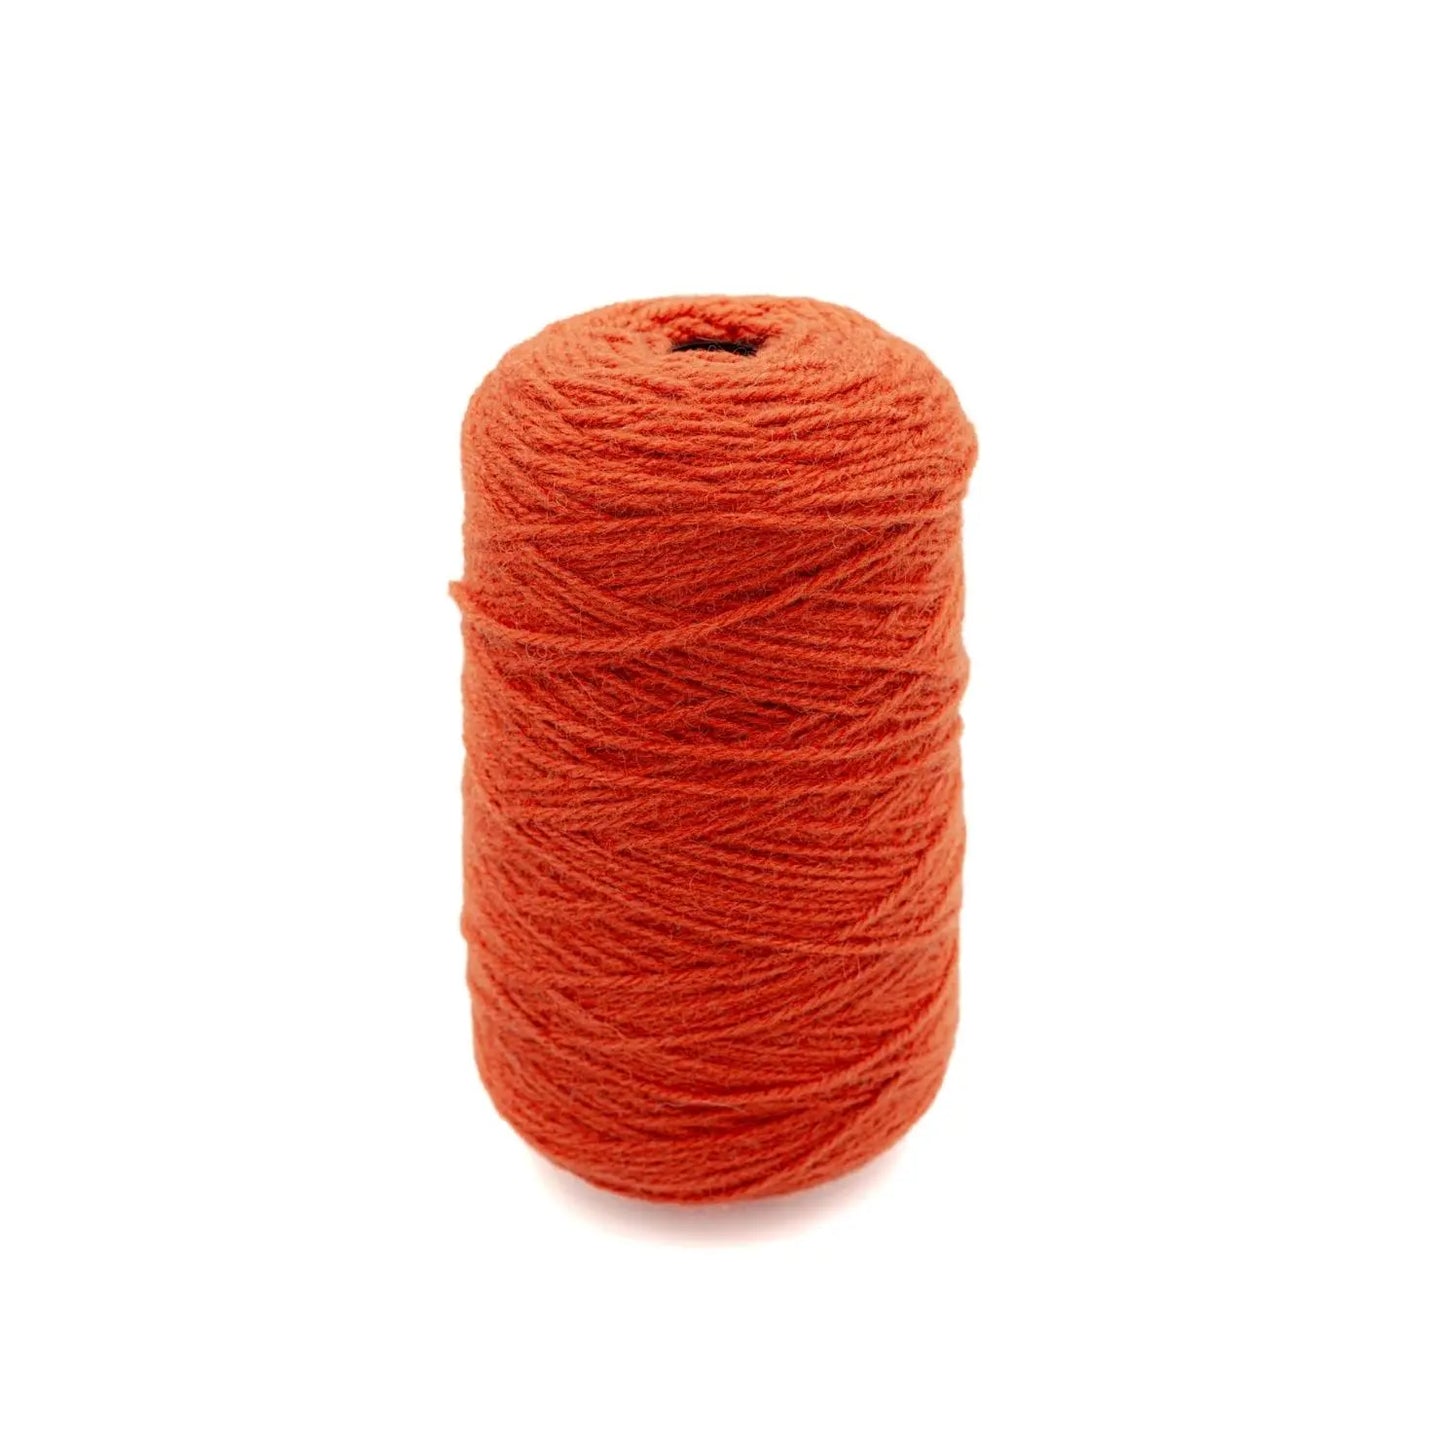 Sinopia Orange Wool Yarn